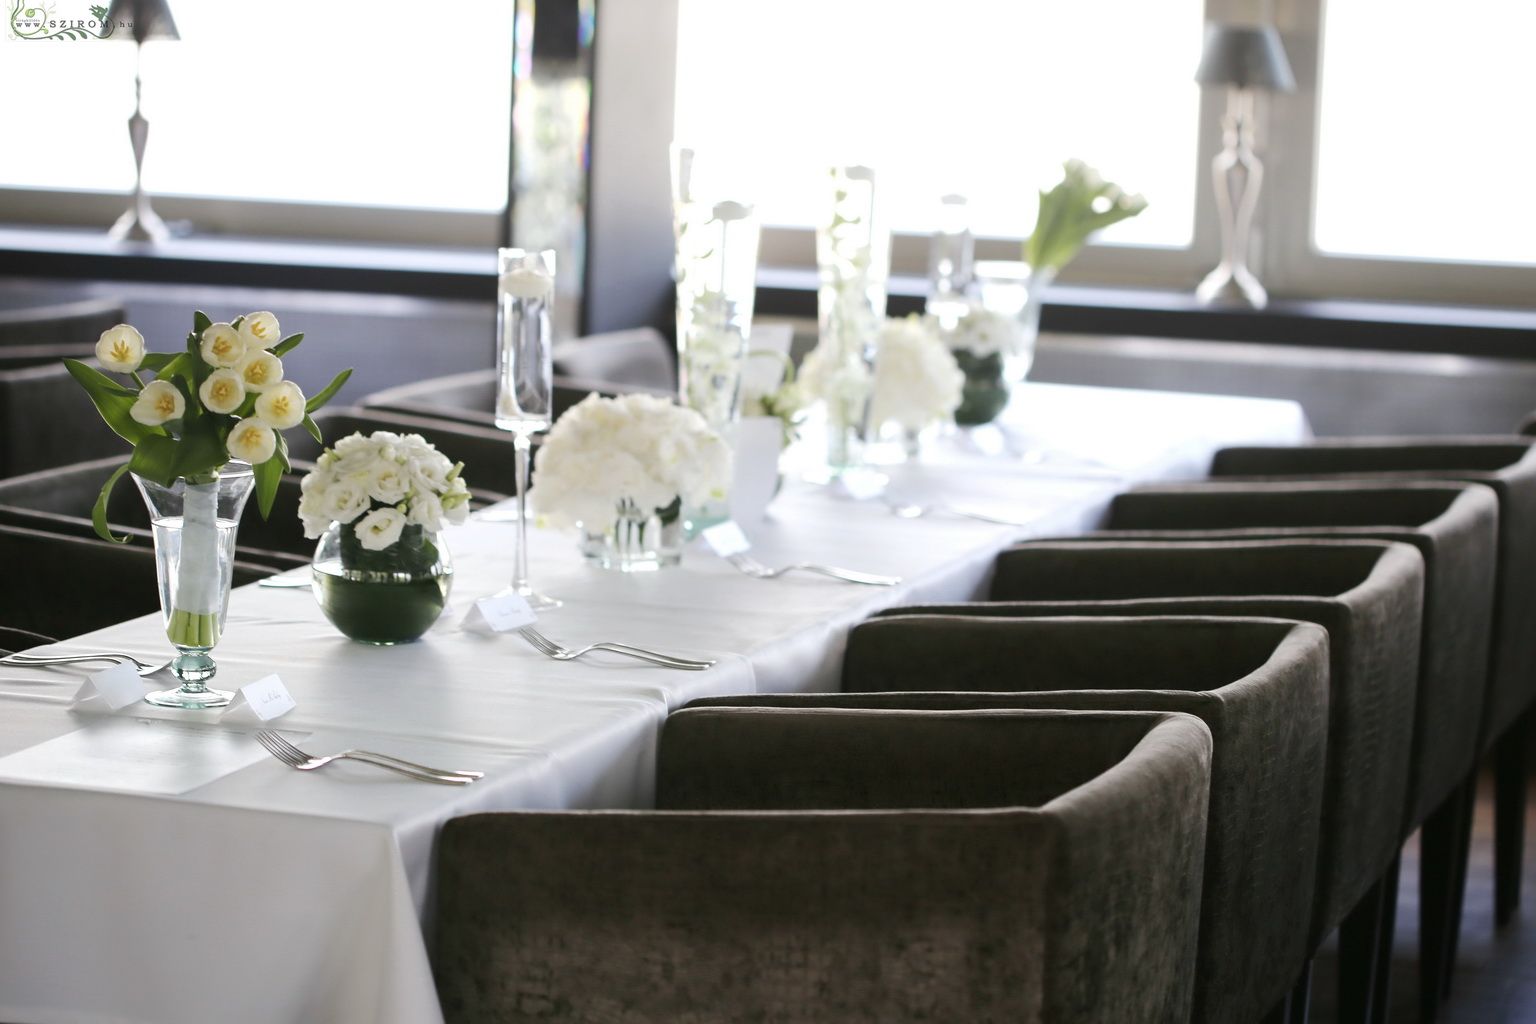 Esküvői asztal díszítés sok vázával, Spoon Budapest 10 váza ára (dendrobium, hortenzia, tulipán, liziantusz, fehér)